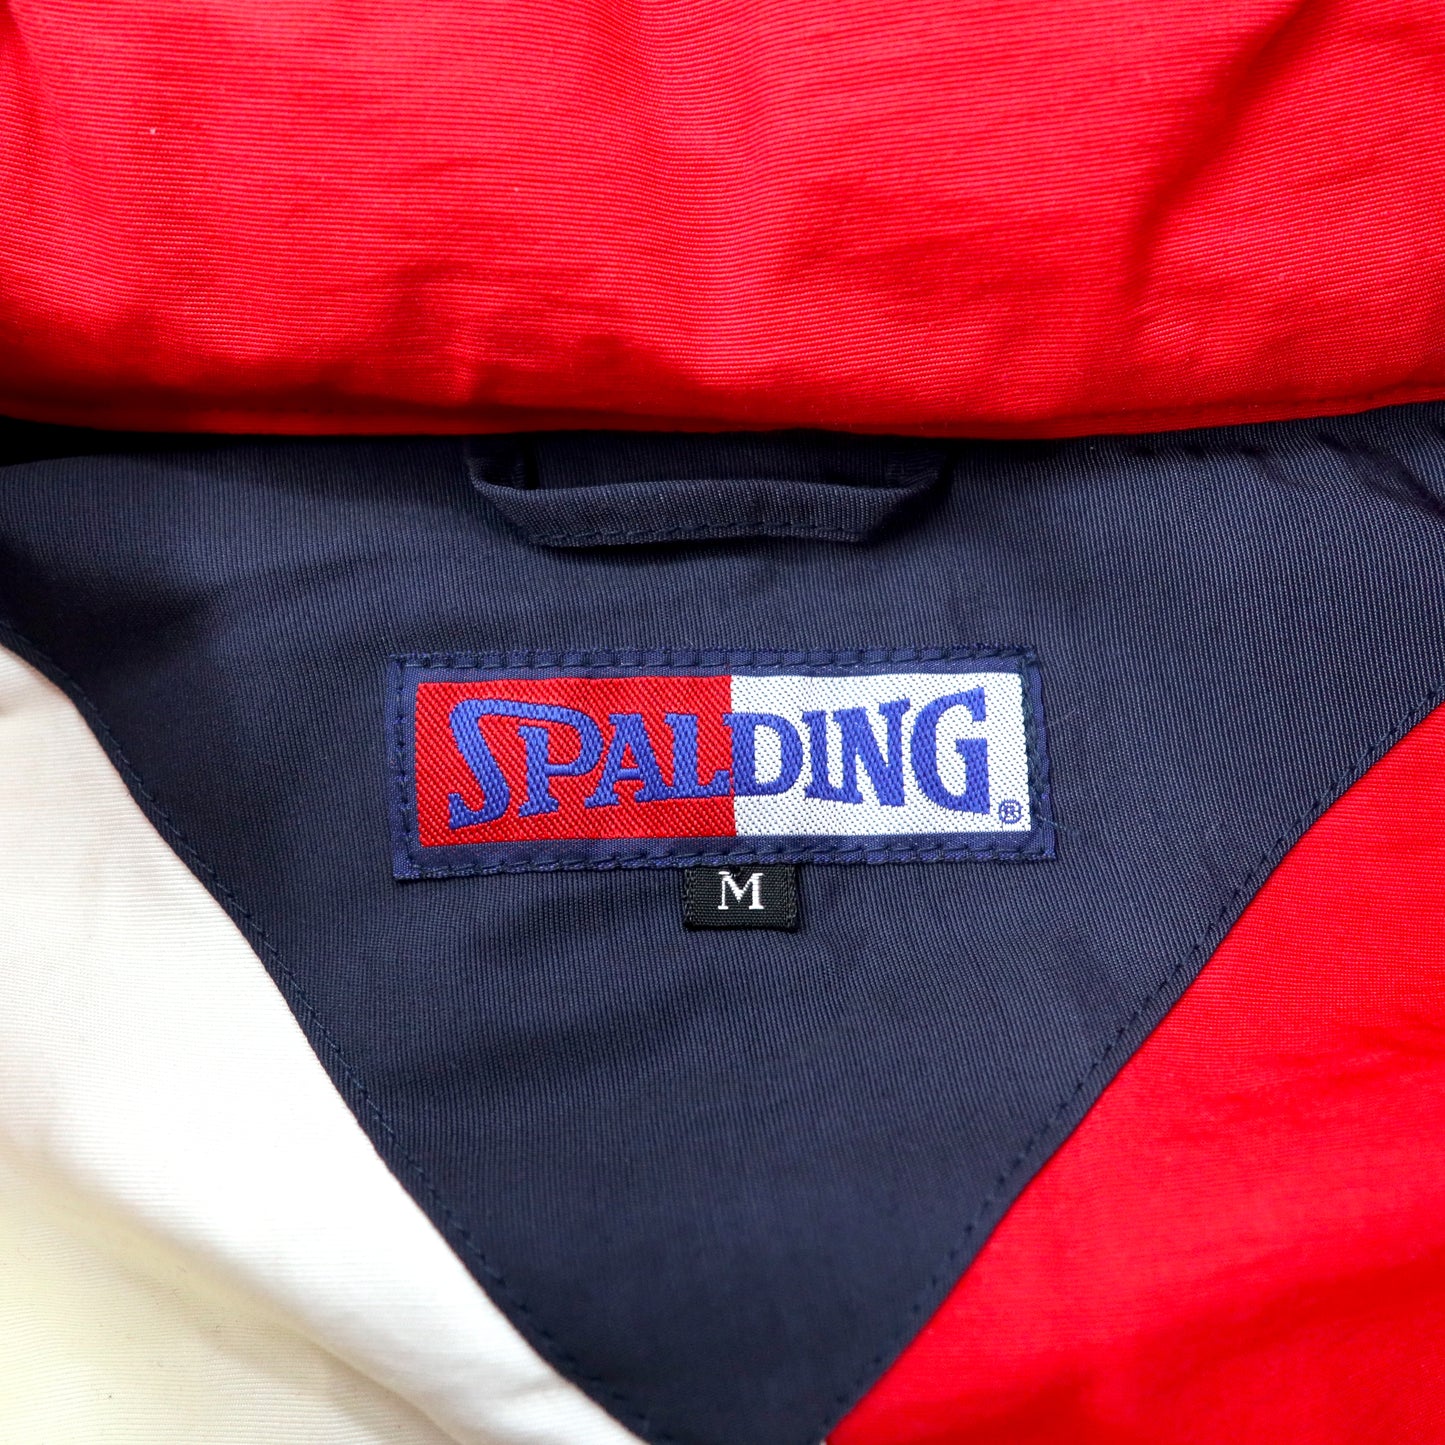 SPALDING 90年代 セーリングジャケット M マルチカラー コットン ナイロン フード着脱式 未使用品